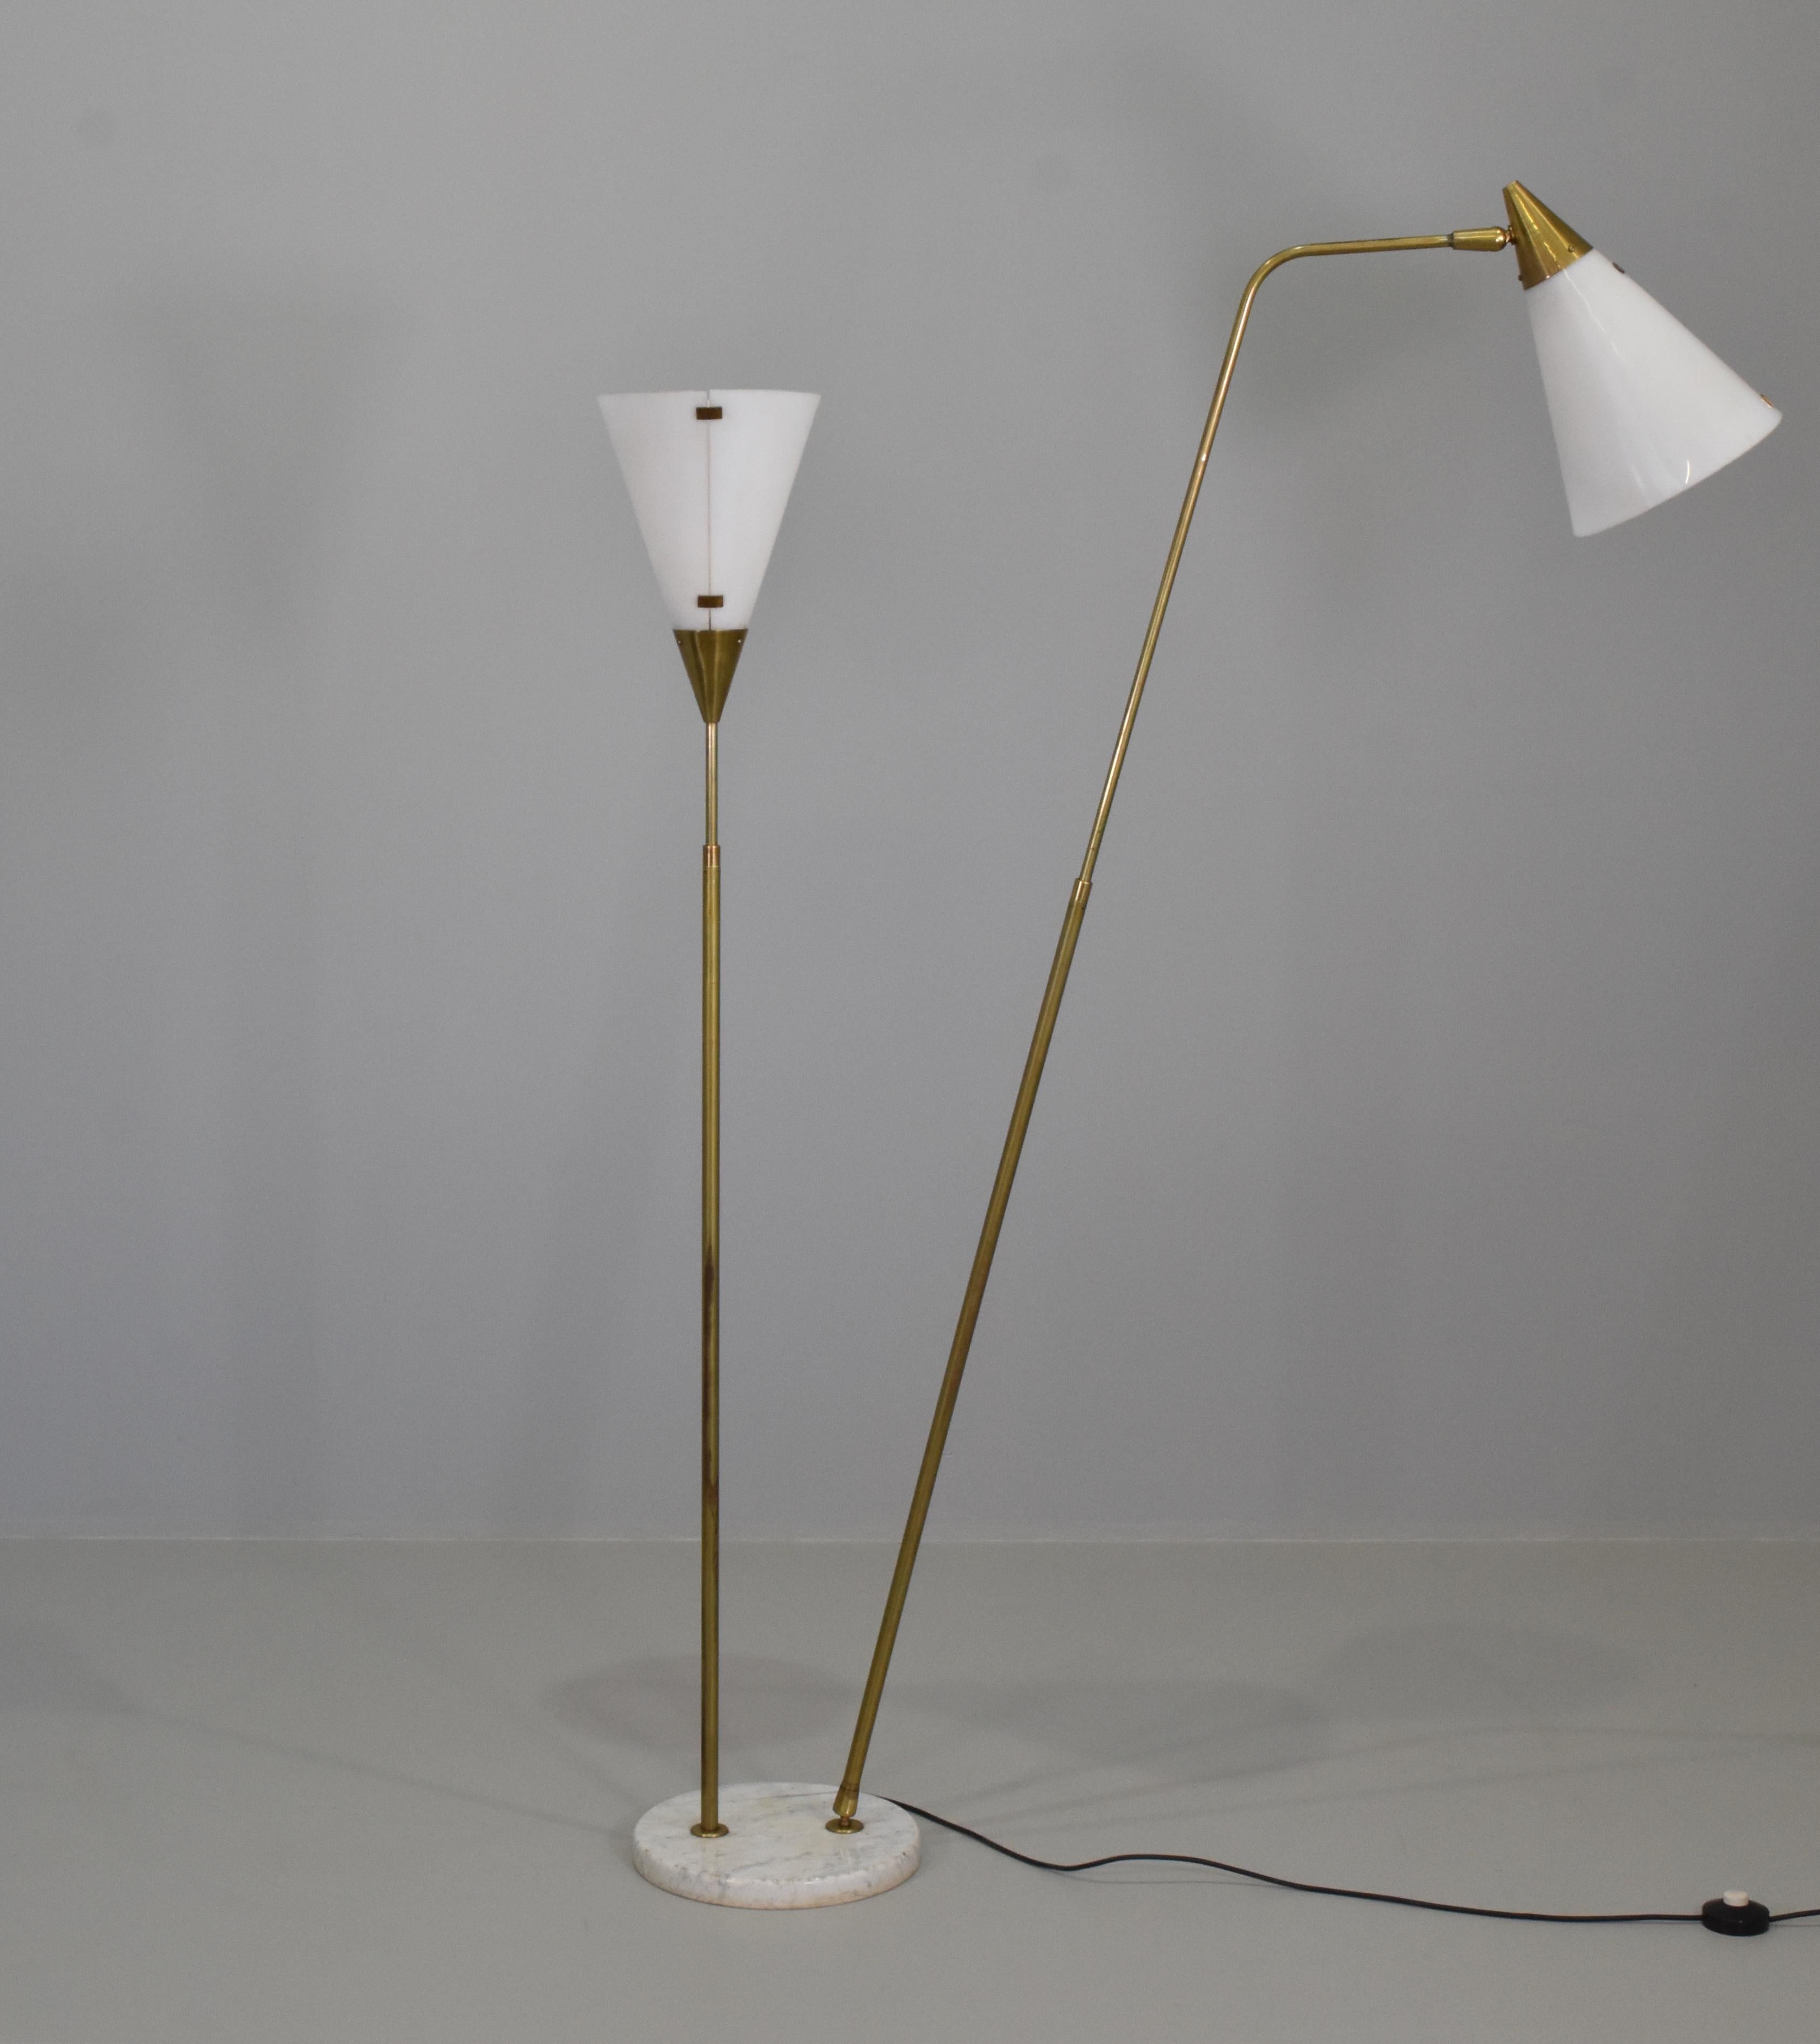 Italian Giuseppe Ostuni Rare Adjustable Floor Lamp, Brass, Acrylic, O-Luce, Italy, 1950s For Sale